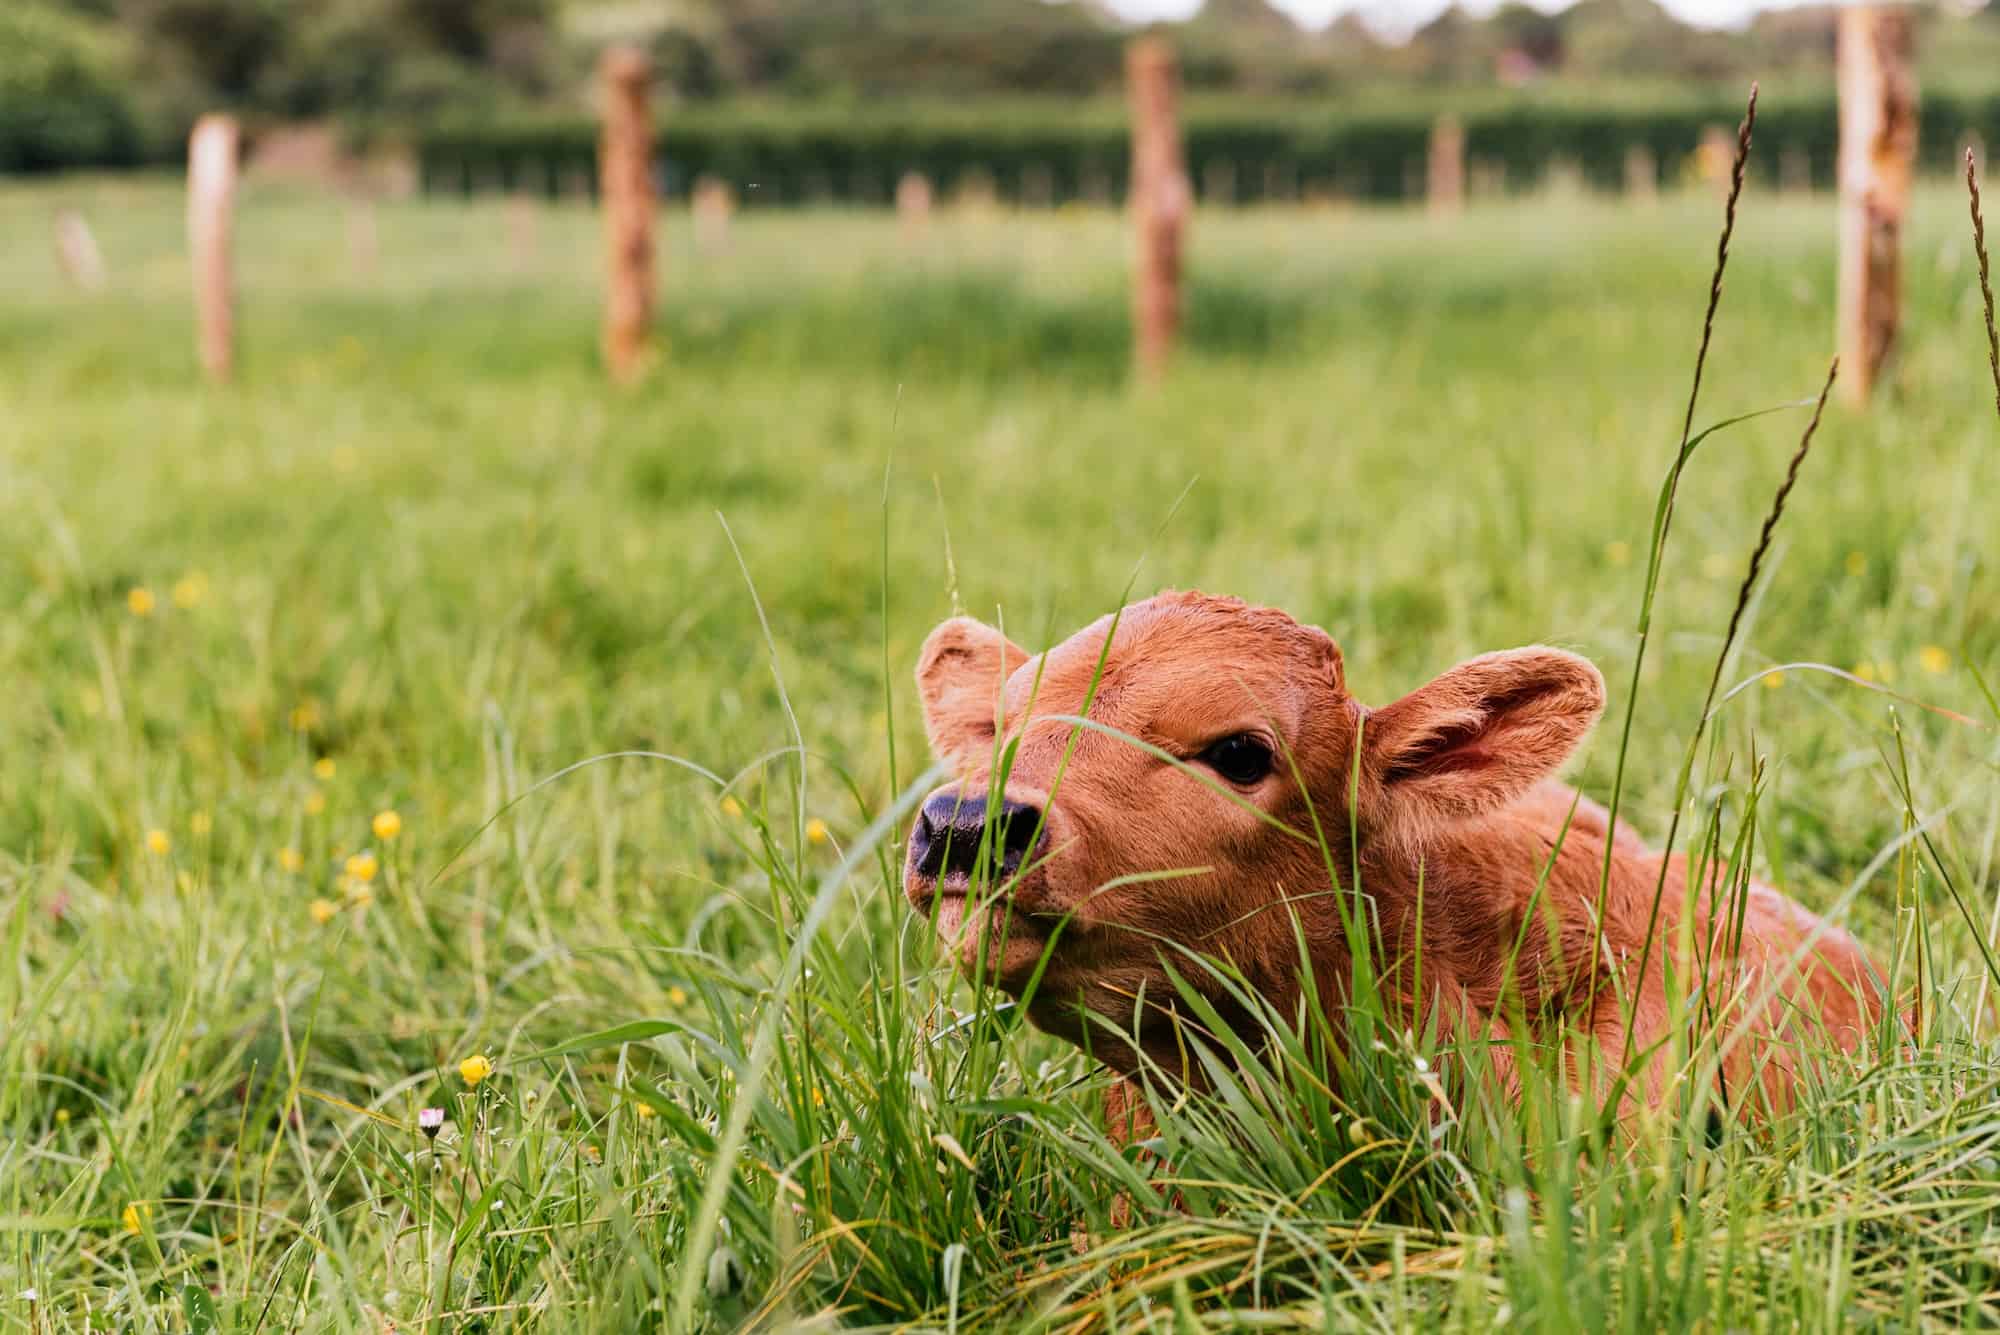 newborn calf lying in the field